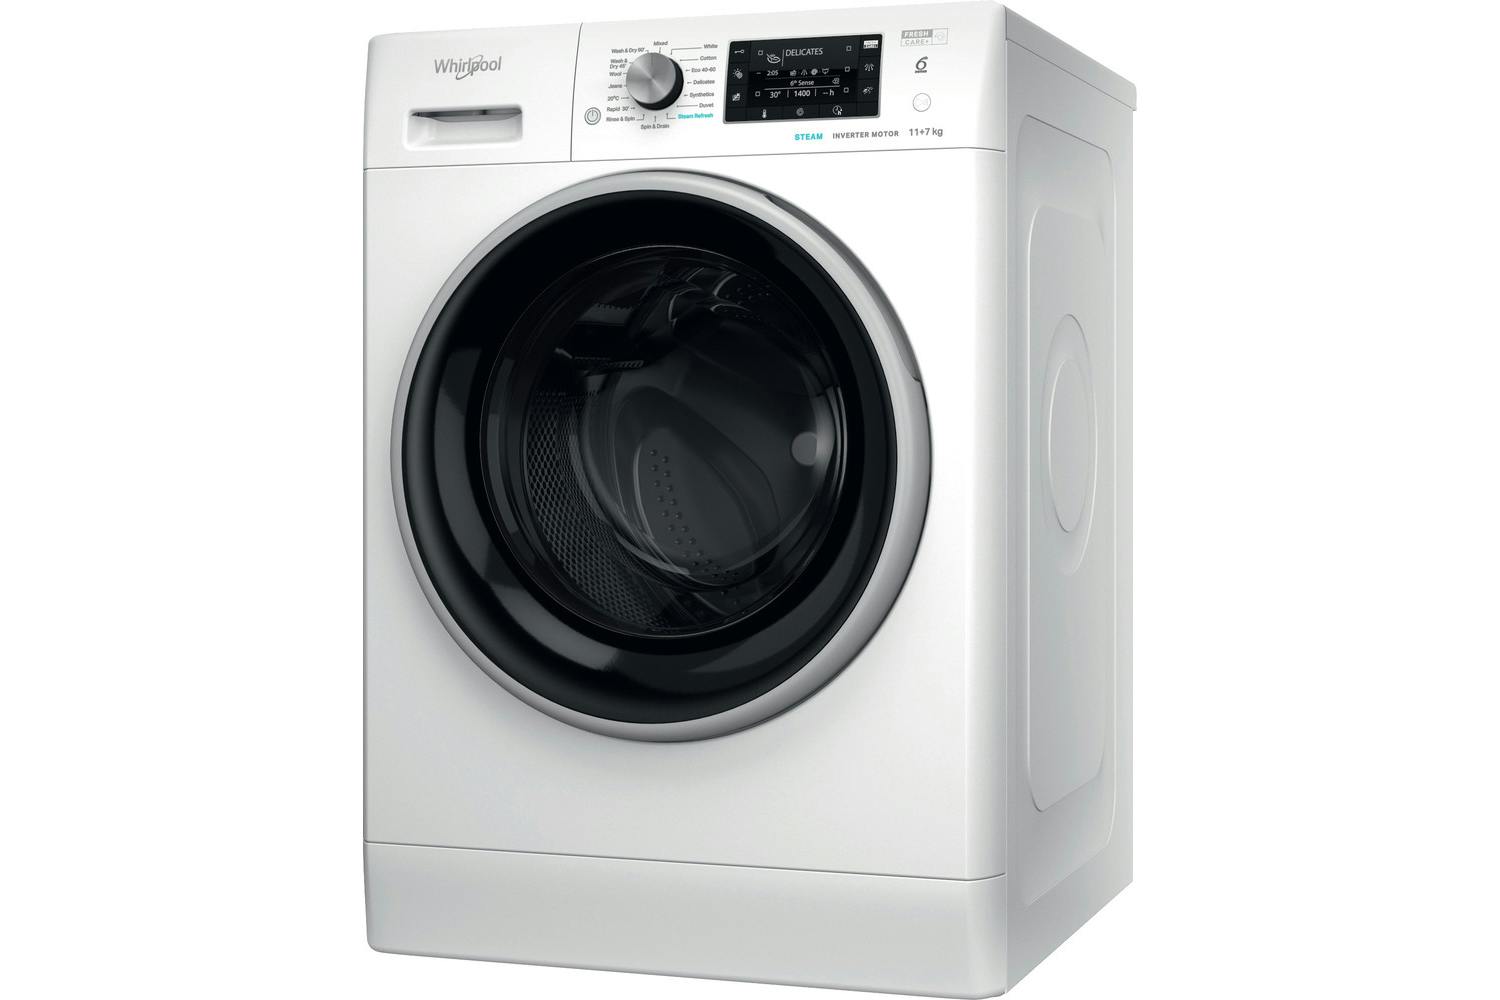 Whirlpool 11kg Washer / 7kg Dryer Freestanding Washer Dryer | FFWDD1174269BSV